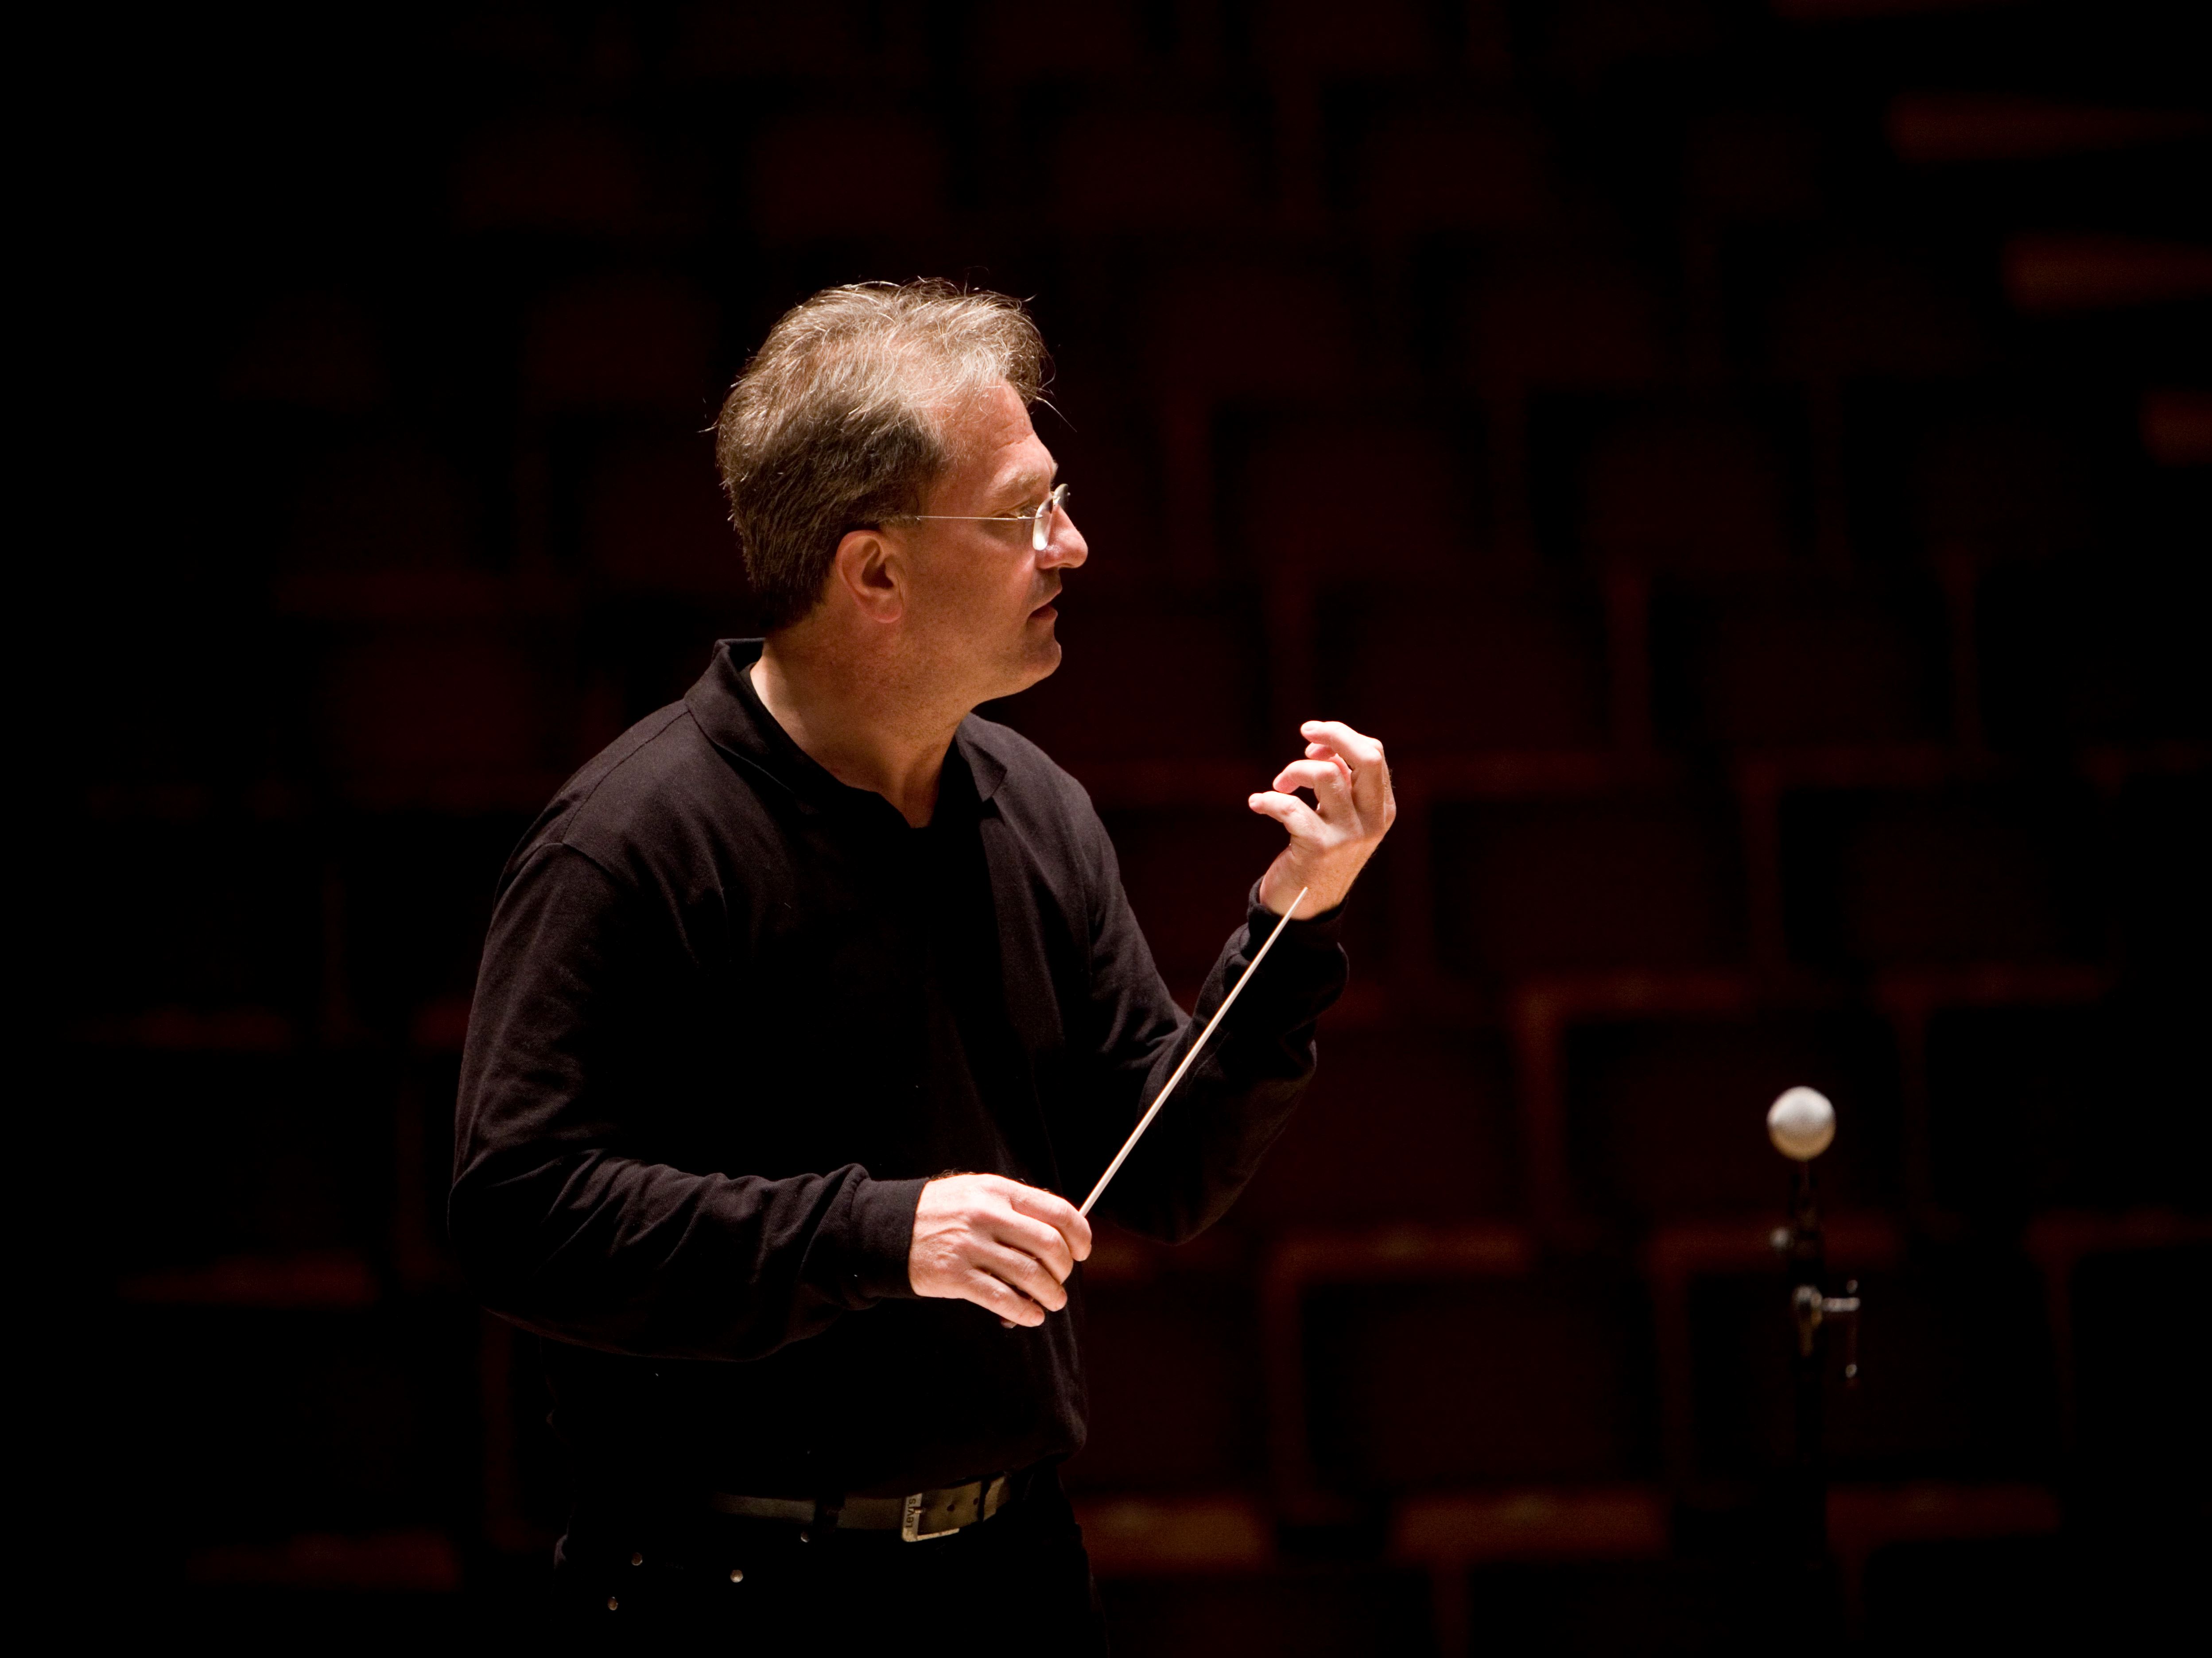 Porträtt på dirigenten Gerard Korsten när han dirigerar